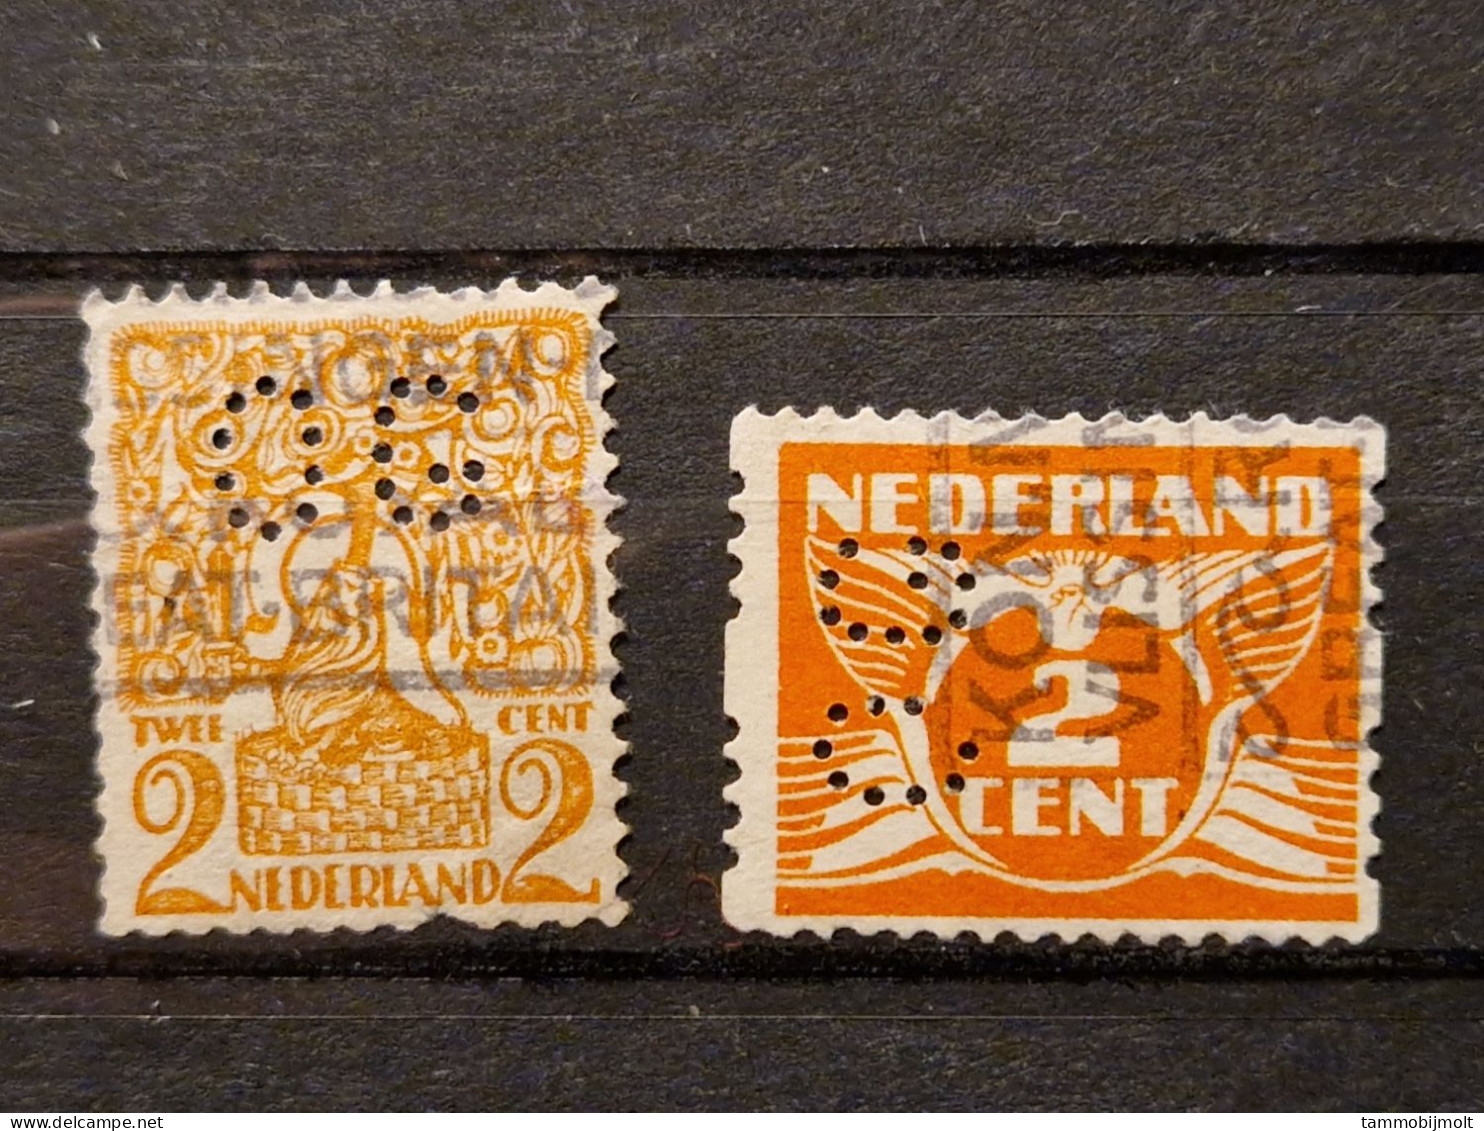 Netherlands, Nederland; Roltanding; POKO Perfins OG; 2 Different Stamps - Unclassified